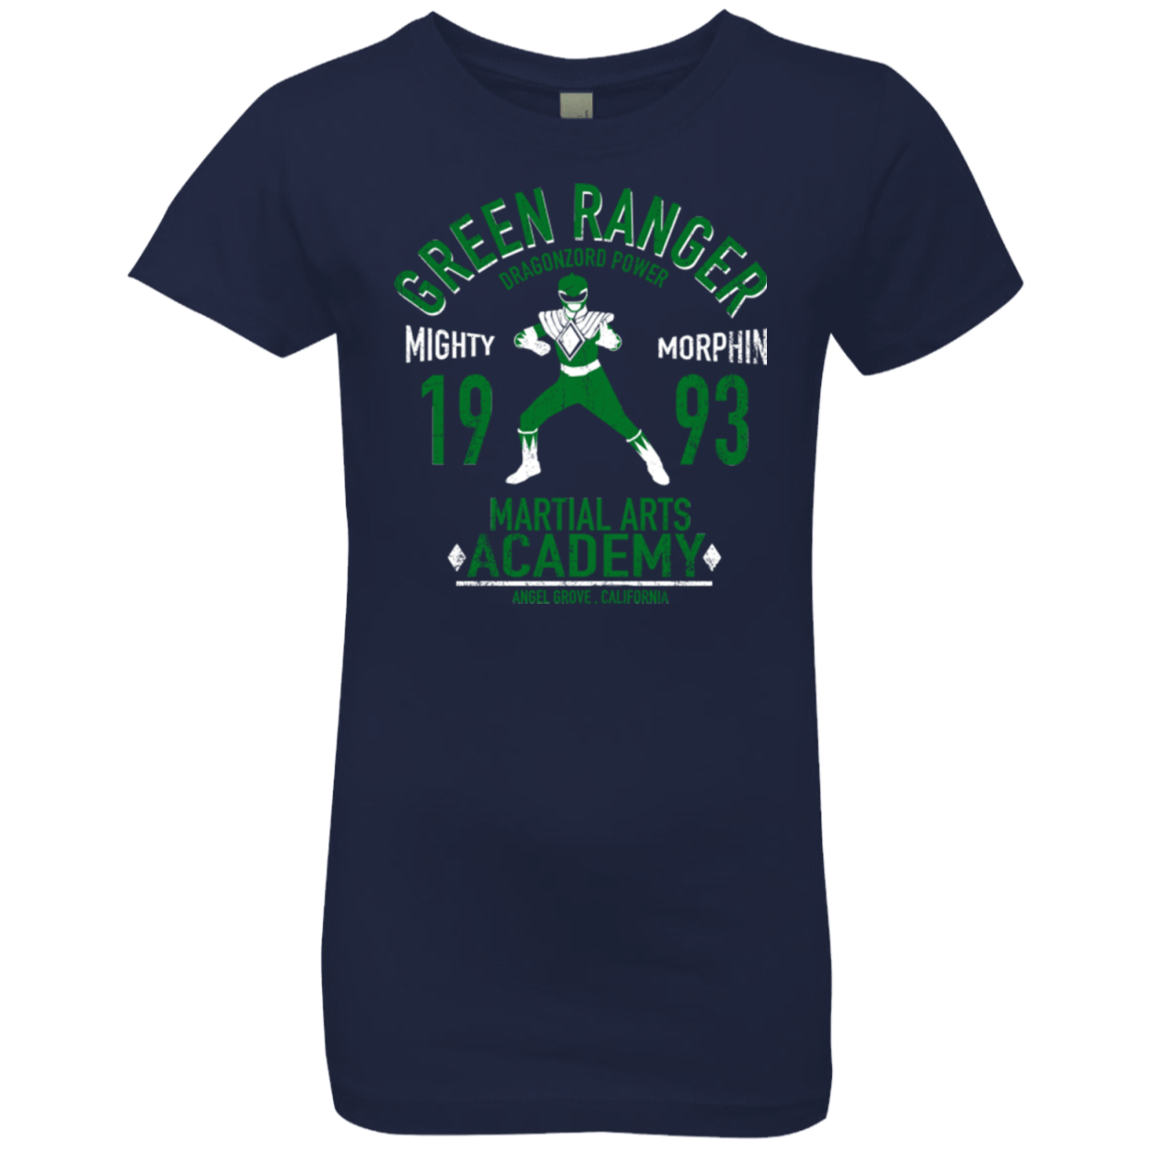 T-Shirts Midnight Navy / YXS Dragon Ranger (1) Girls Premium T-Shirt